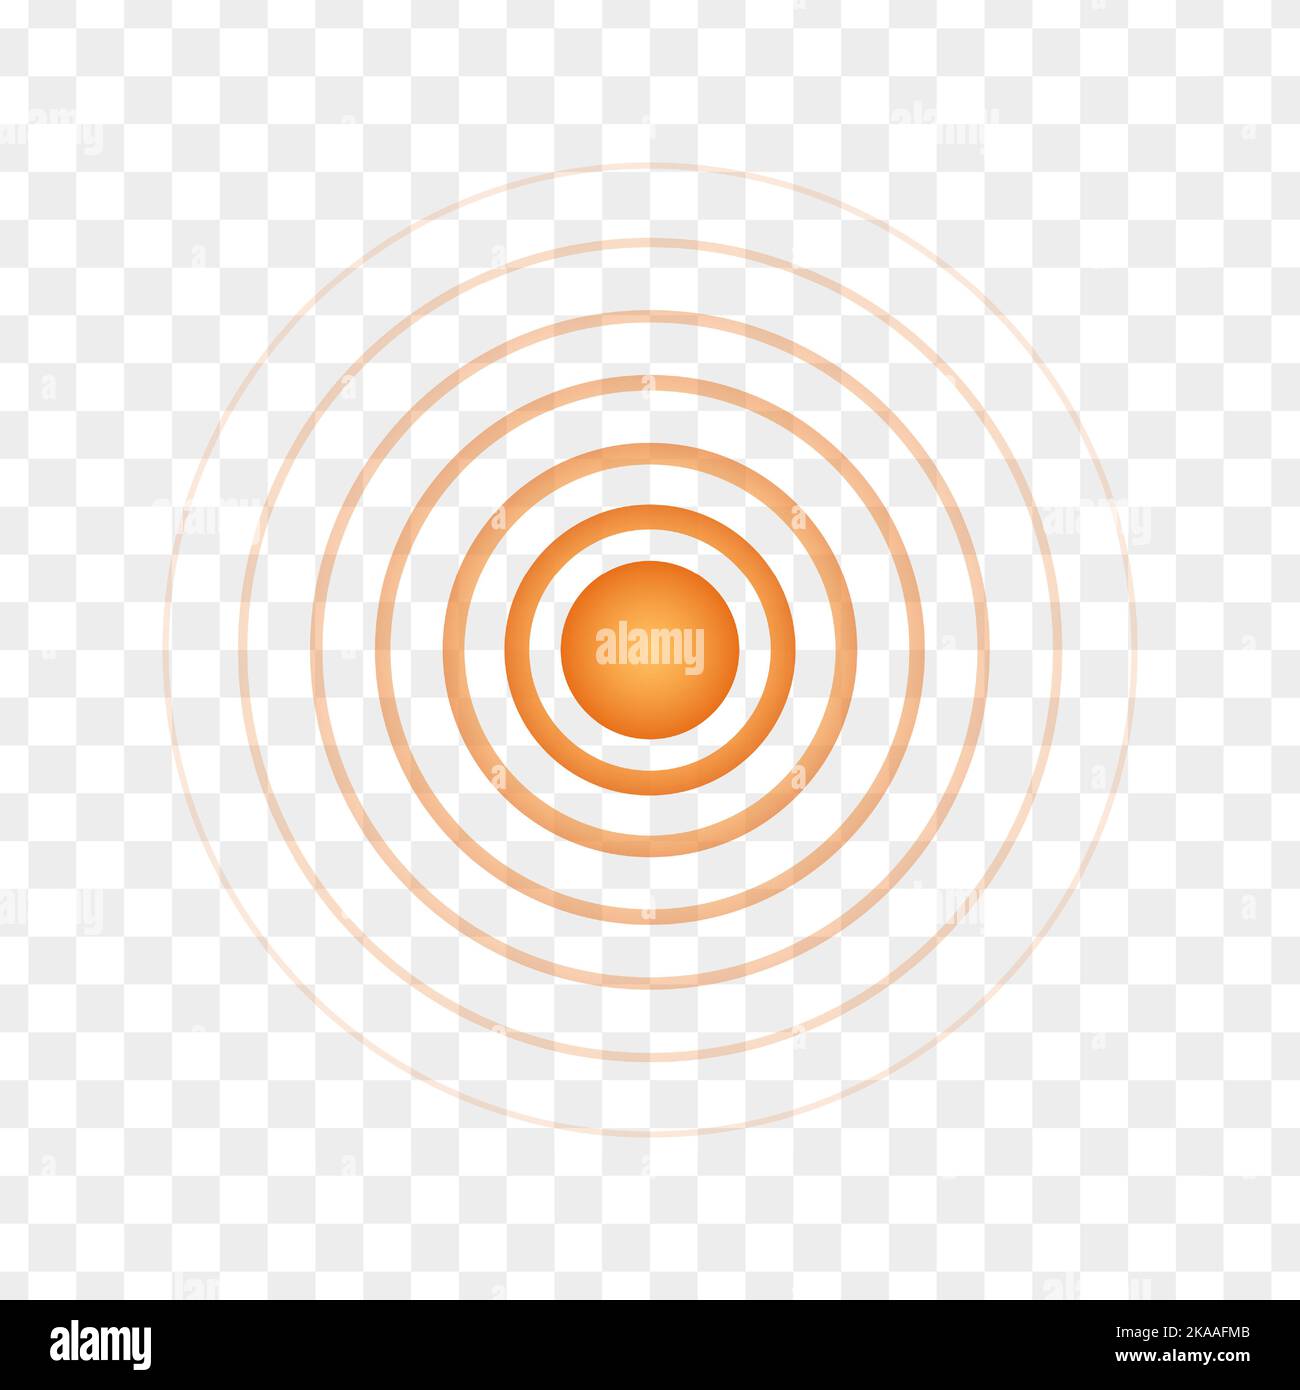 Orangefarbener konzentrischer Punkt. Rundes Lokalisierungssymbol. Symbol für Ziel, Ziel, Schmerz, Heilung, Verletzung, Schmerzhaft. Radar-, Schall- oder Sonarwellenzeichen auf transparentem Hintergrund. Vektorgrafik Stock Vektor